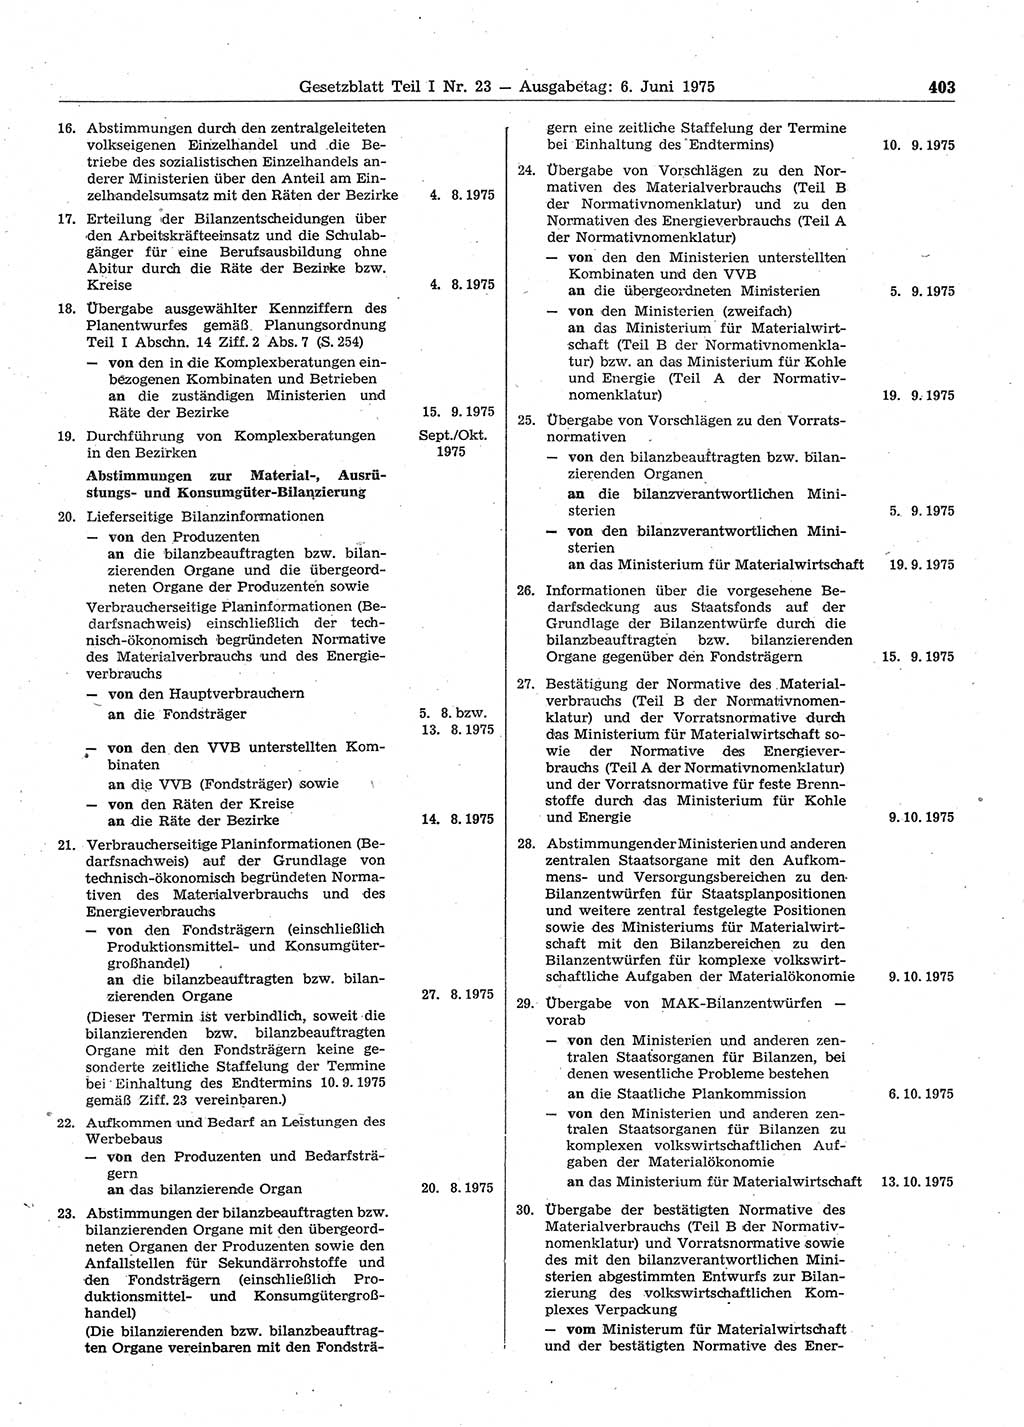 Gesetzblatt (GBl.) der Deutschen Demokratischen Republik (DDR) Teil Ⅰ 1975, Seite 403 (GBl. DDR Ⅰ 1975, S. 403)